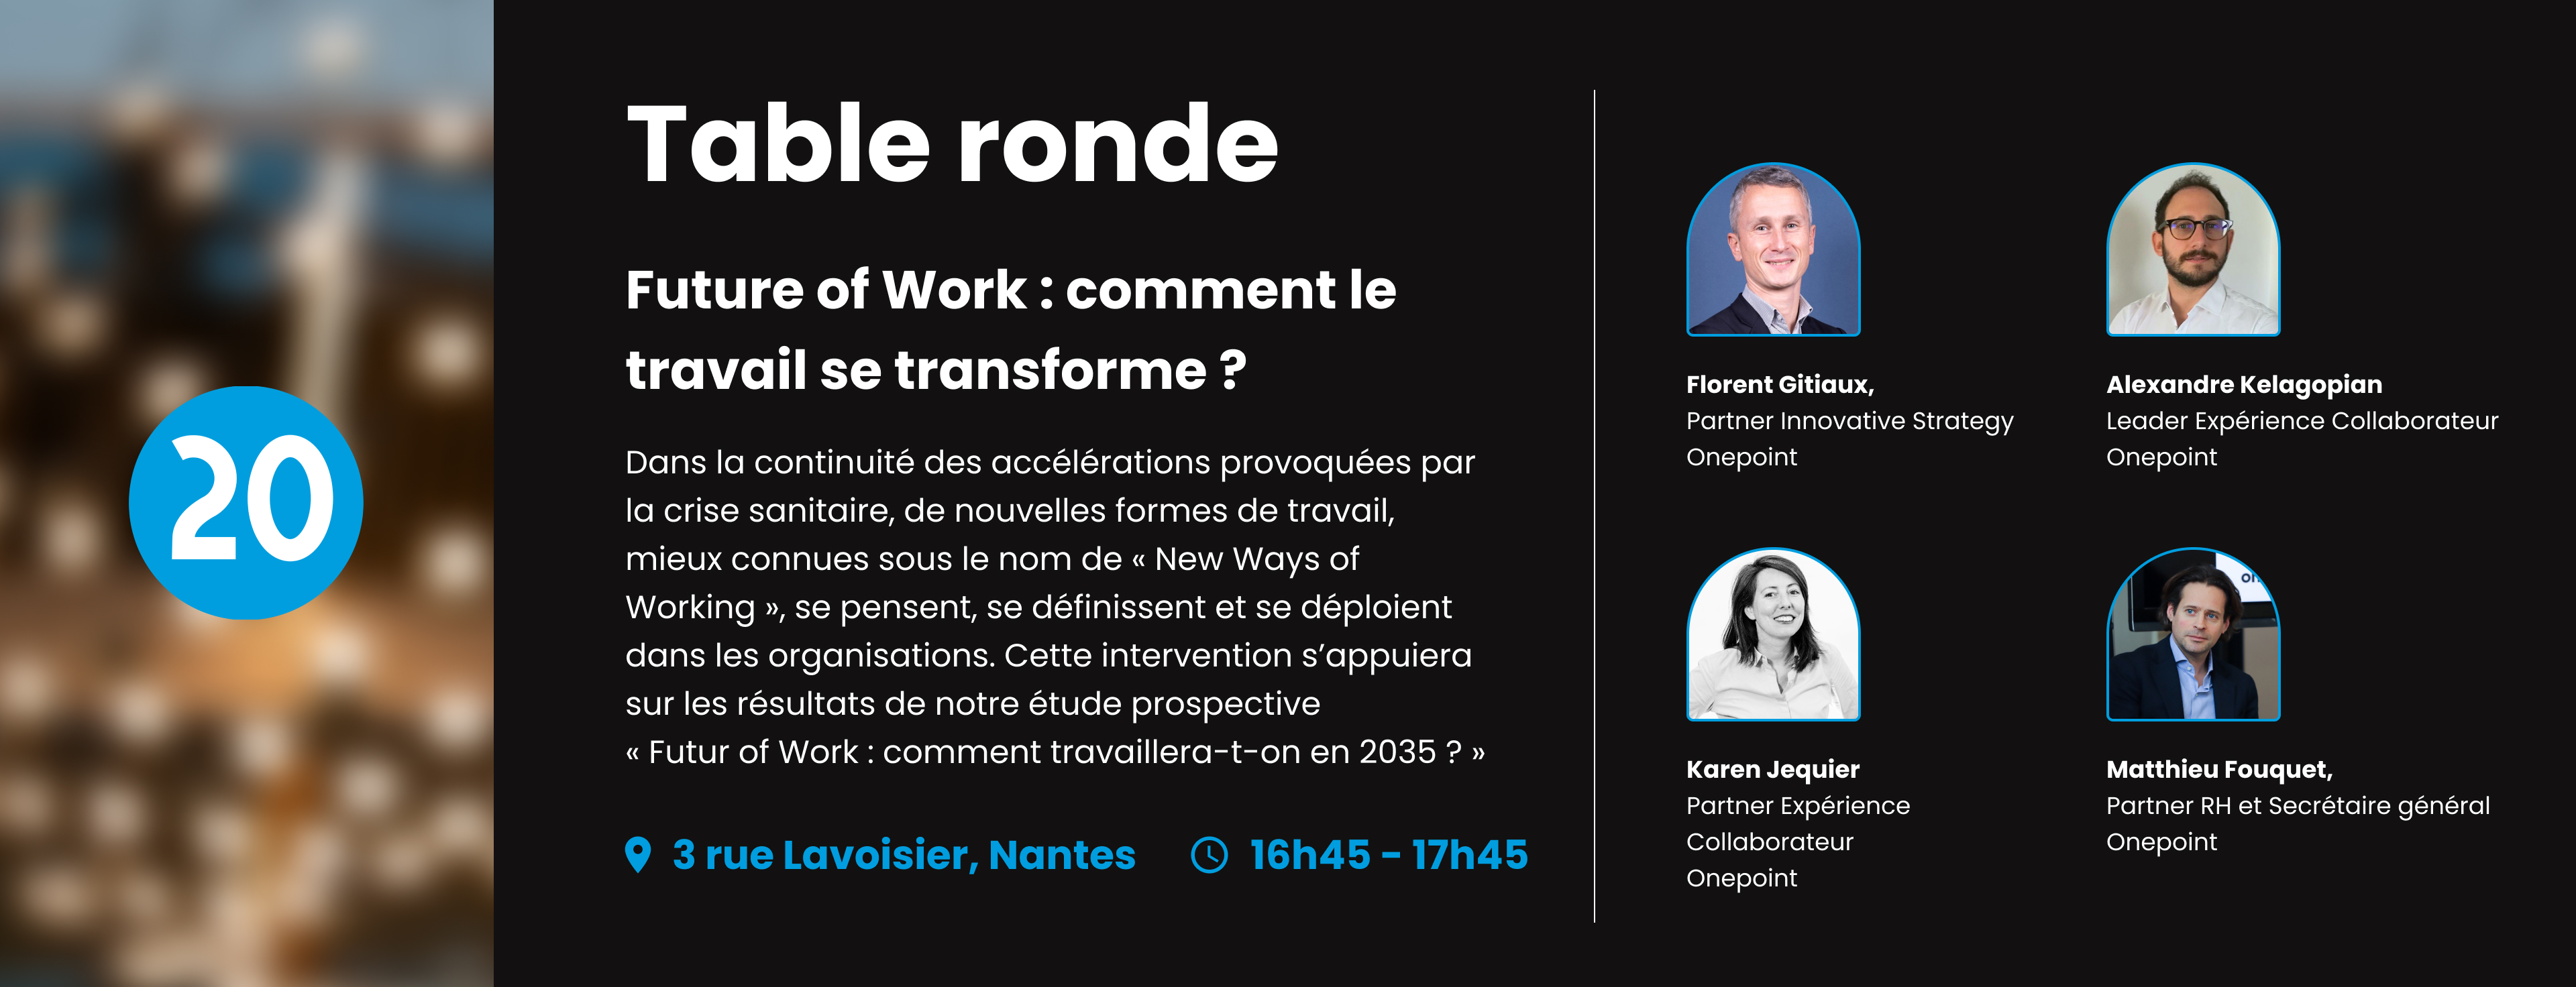 Image de la table ronde Future of work de l'inauguration onepoint à Nantes